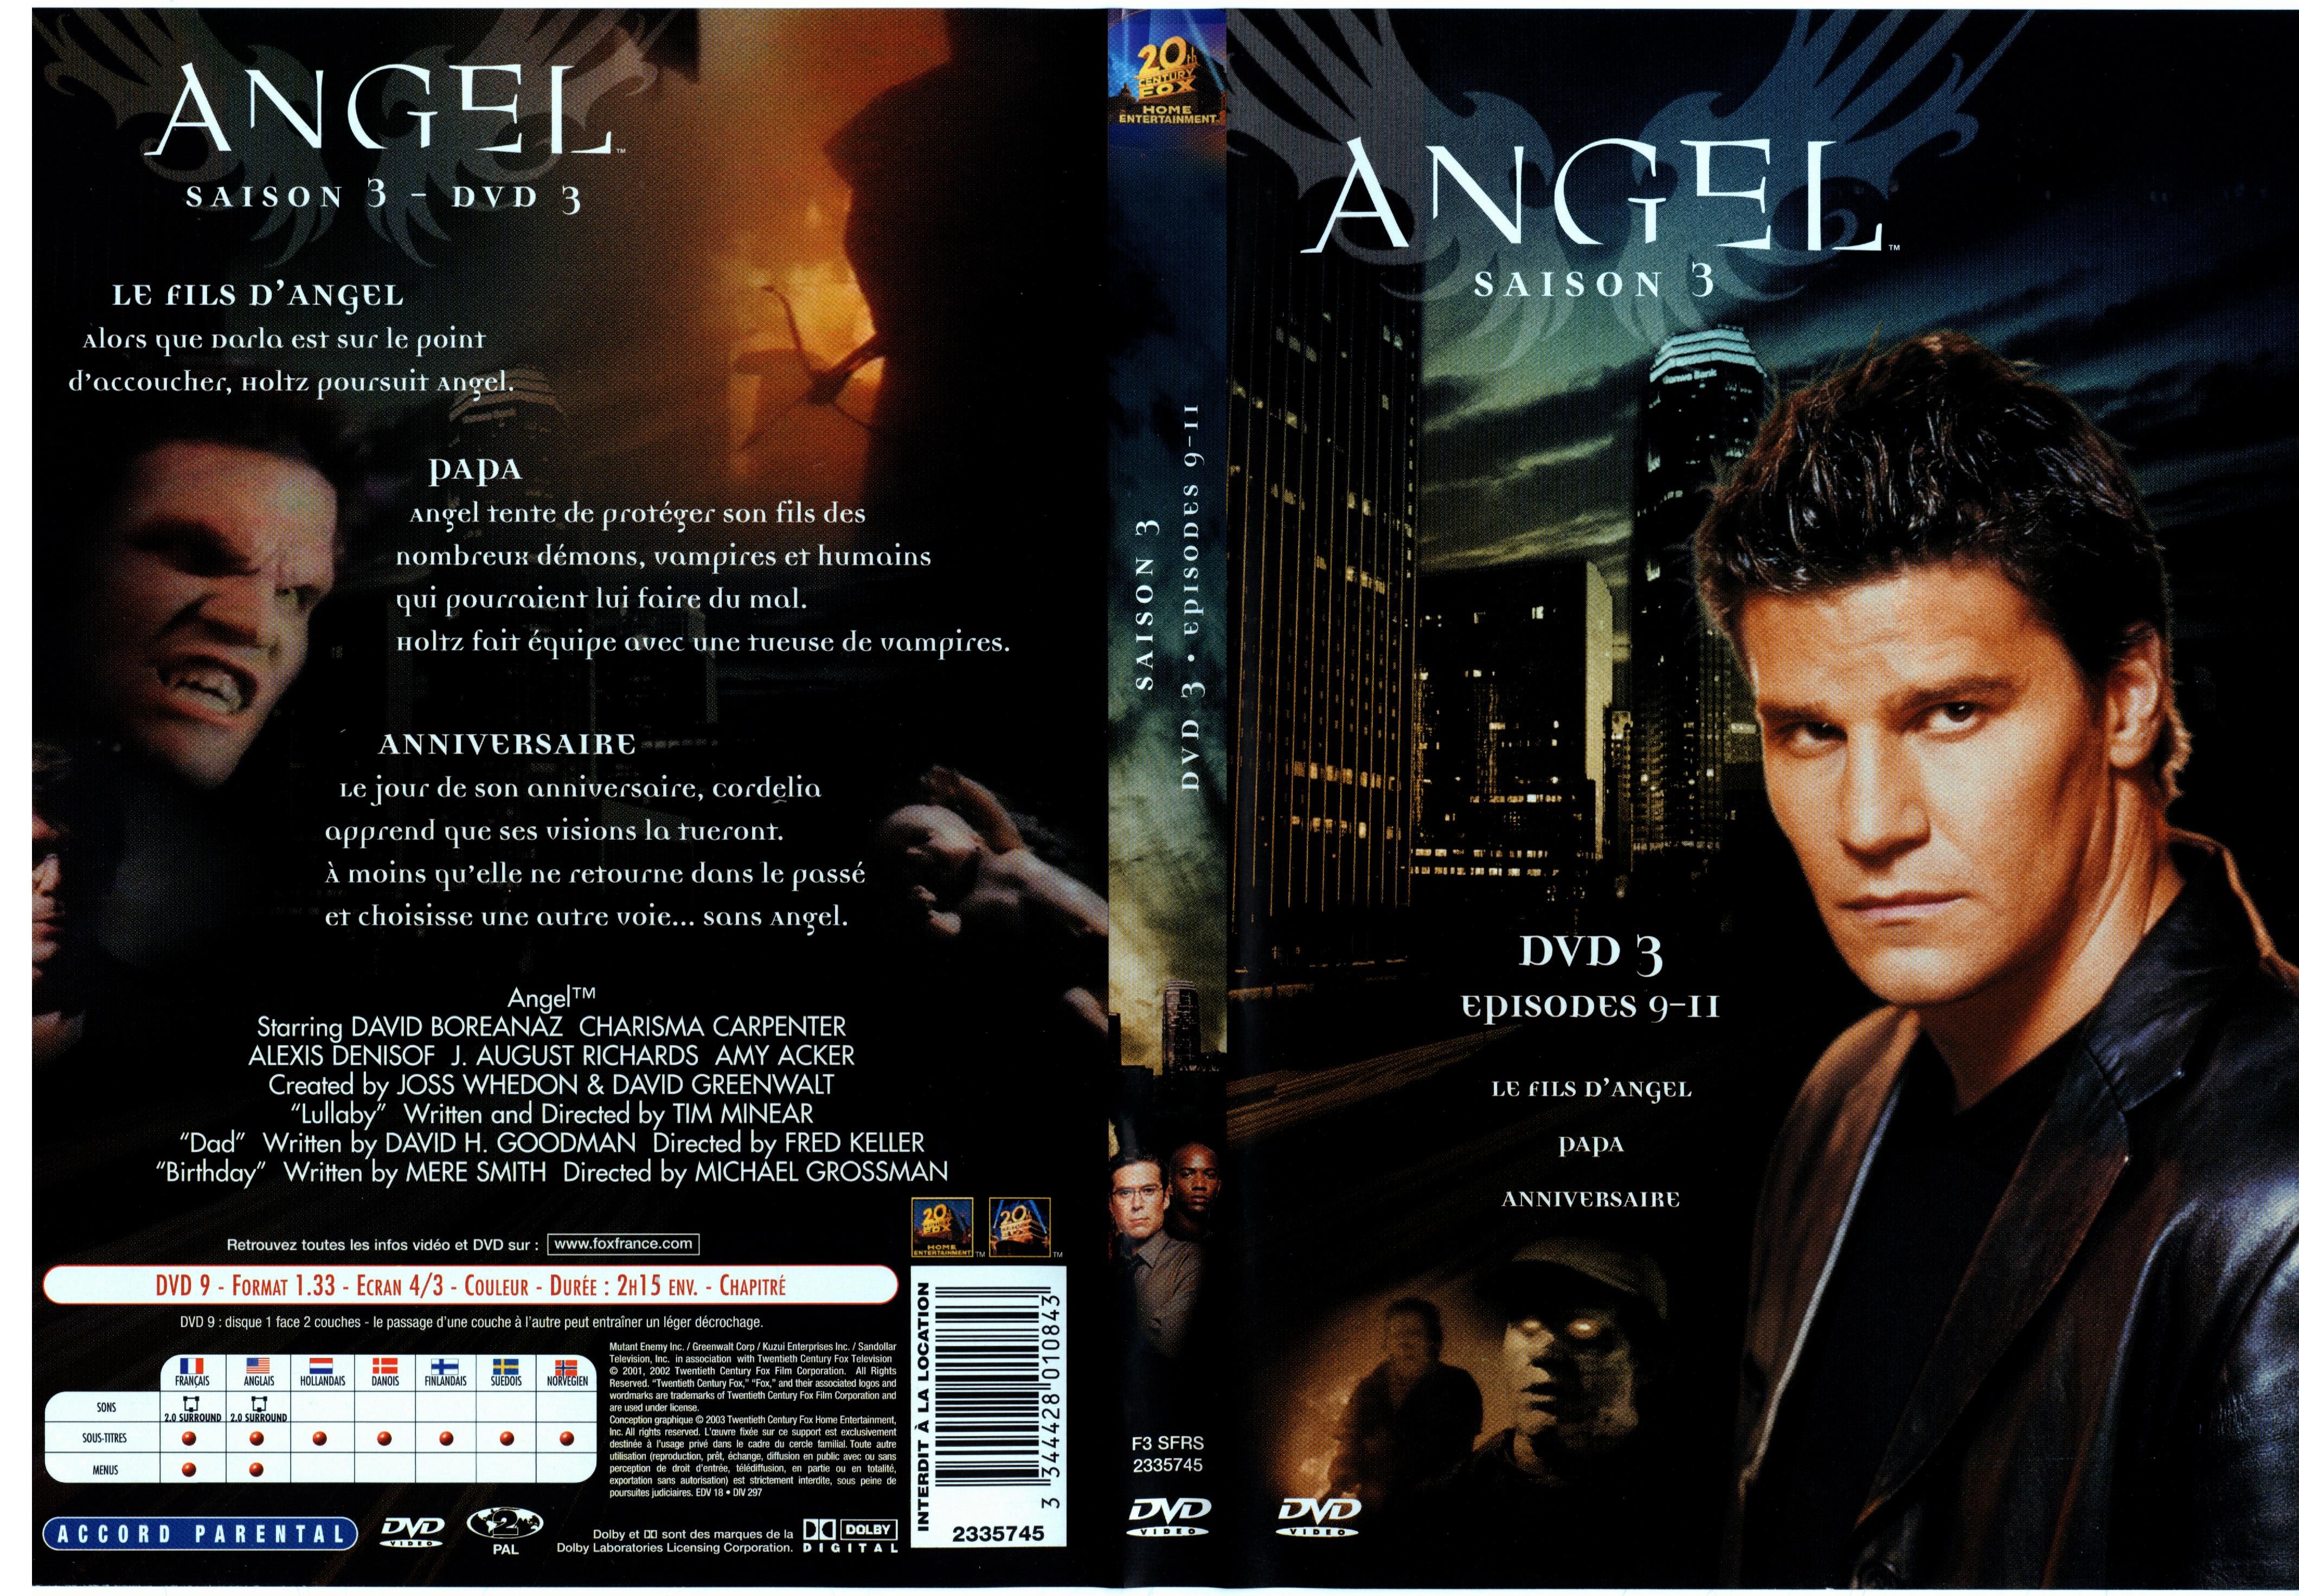 Jaquette DVD Angel saison 3 dvd 3